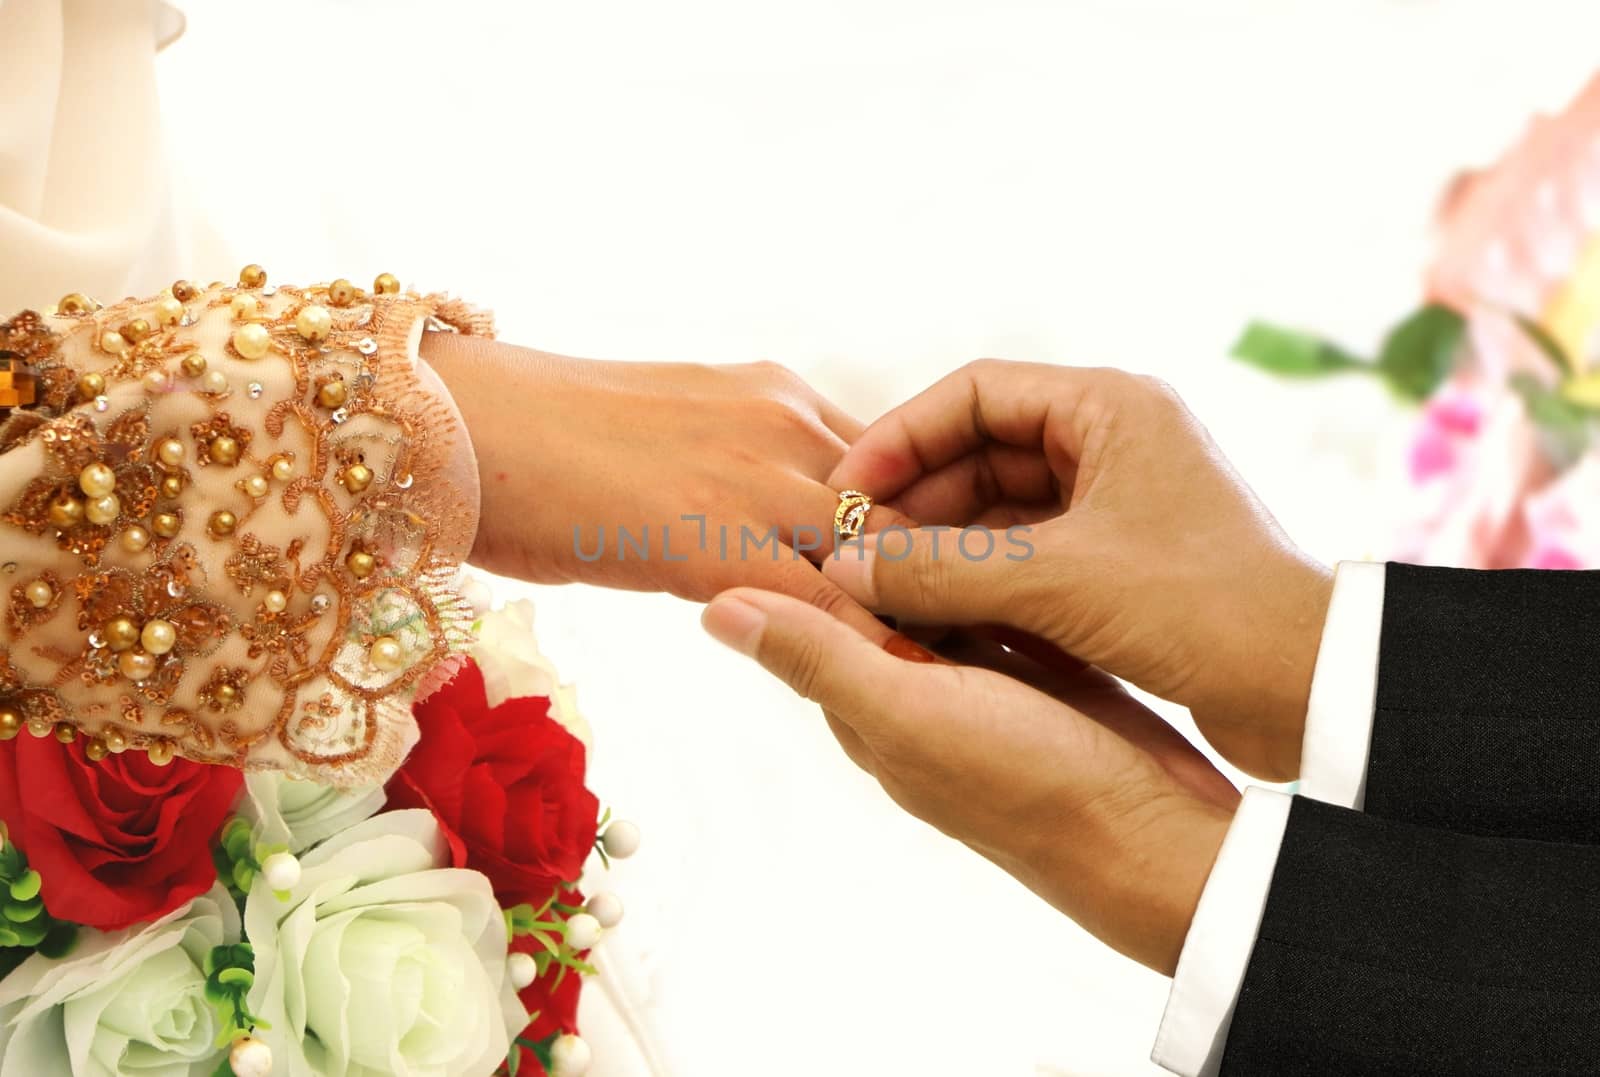 Wedding ring exchange ceremony between bride and groom